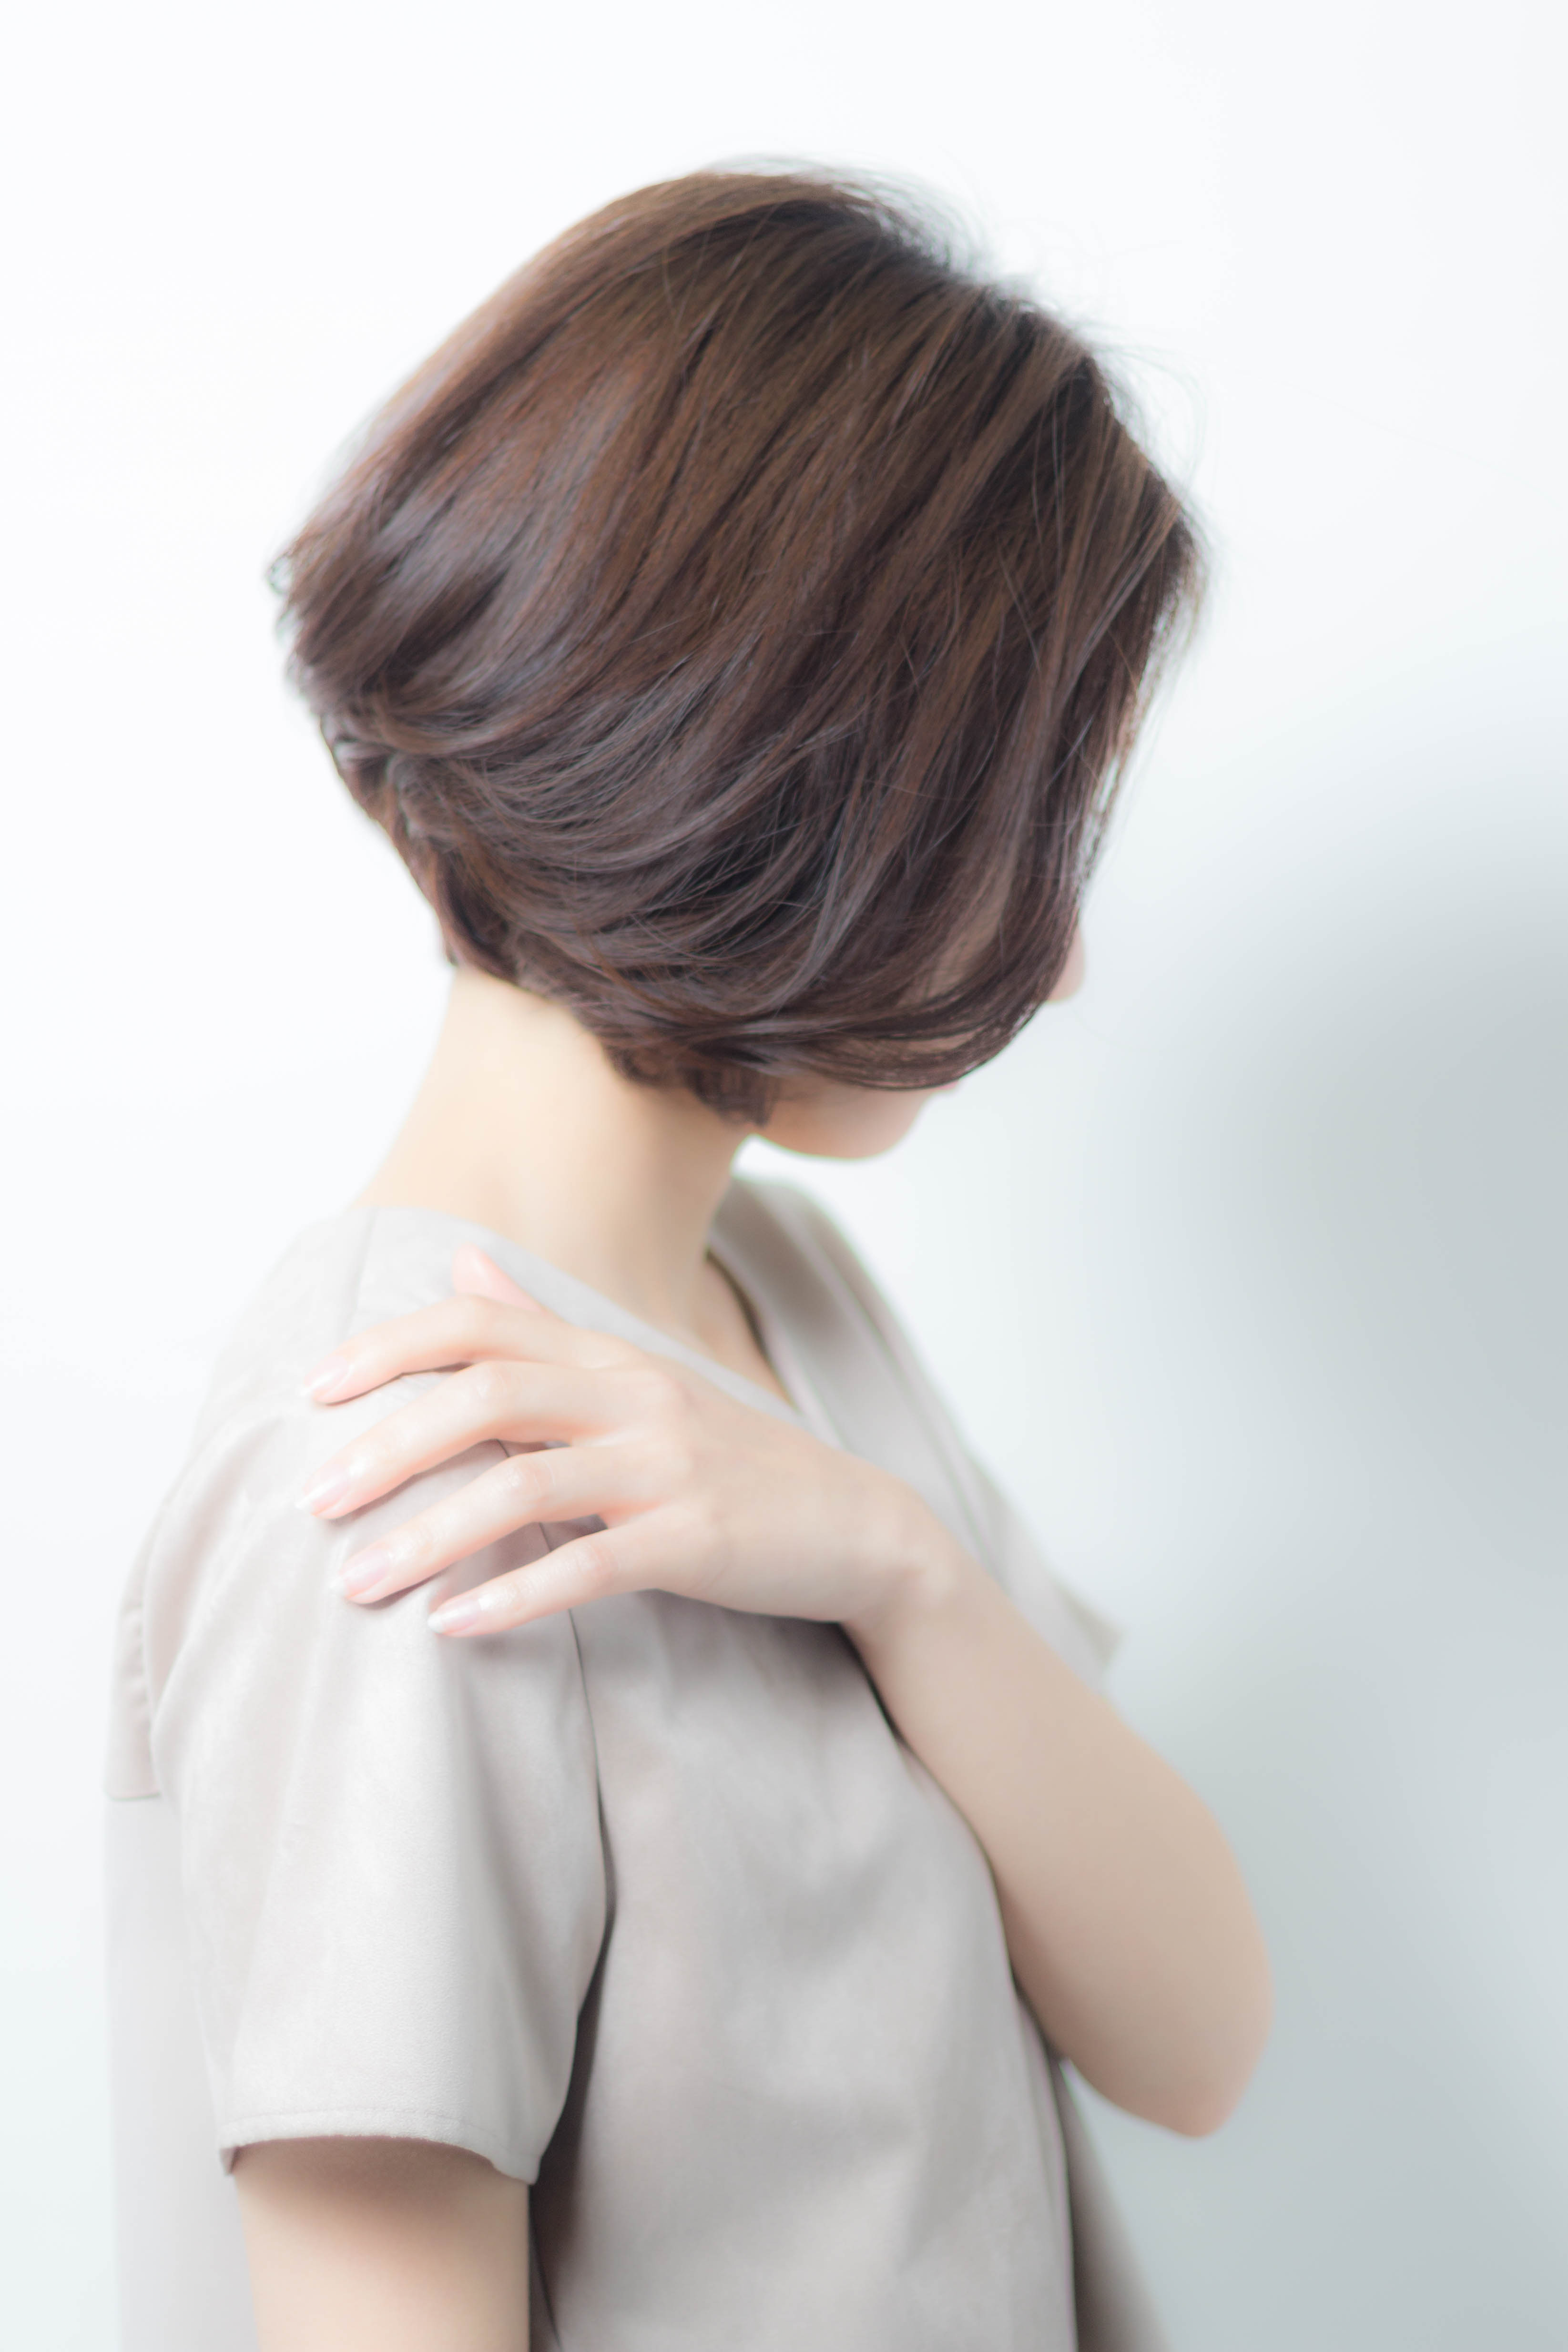 21年秋 40代の髪型のお悩みを 素敵に生かすボブのヘアカタログ 似合わせカットが上手い東京の美容師 美容室minx銀座 蛭田のブログ